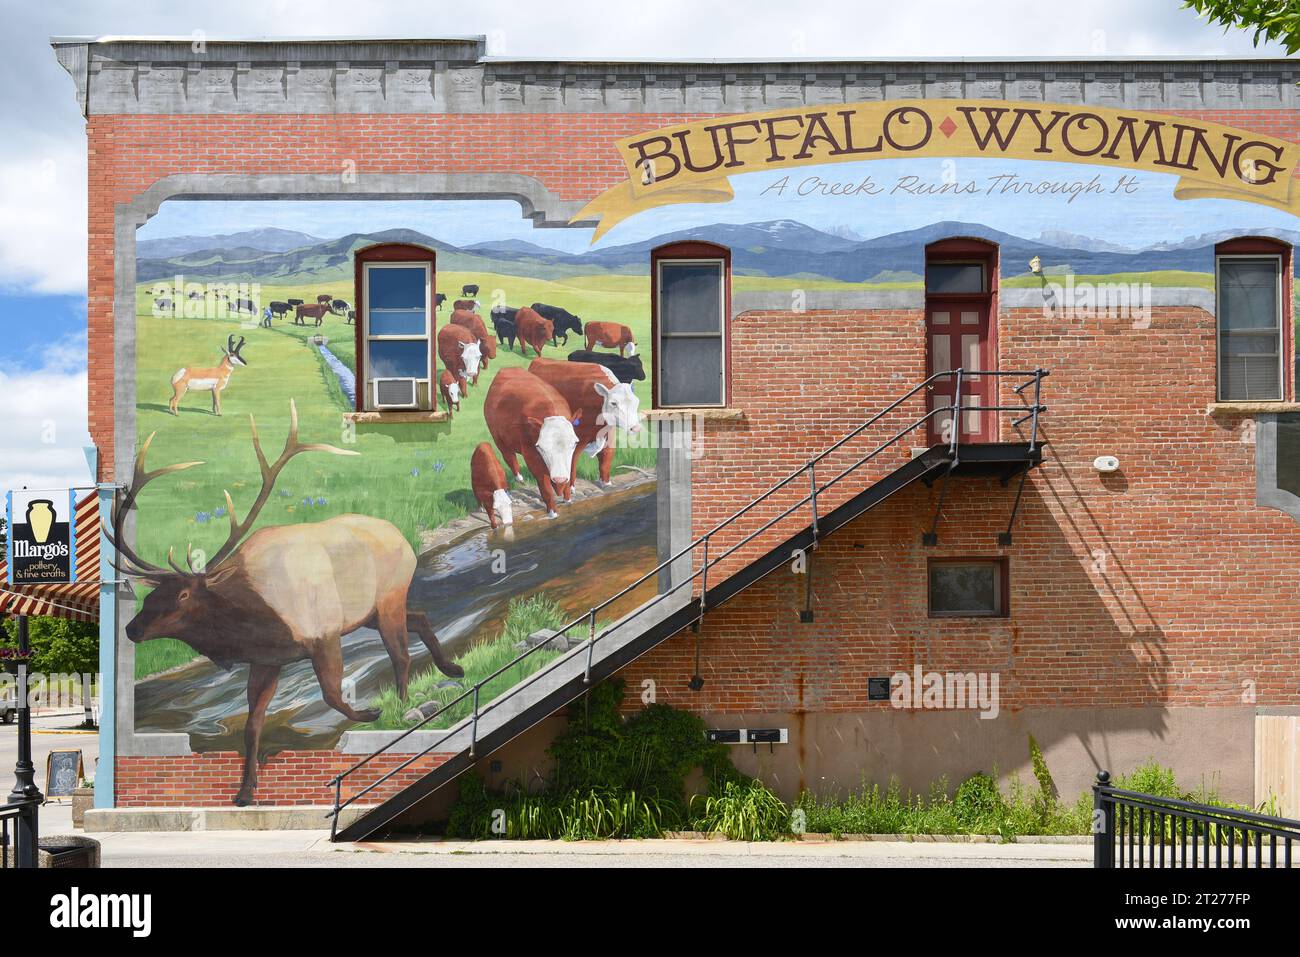 BUFFALO, WYOMING - 23 JUIN 2017 : murale sur le bâtiment de main Street Shop. La rue principale de Buffalo compte plus d'une douzaine de bâtiments historiques. Banque D'Images